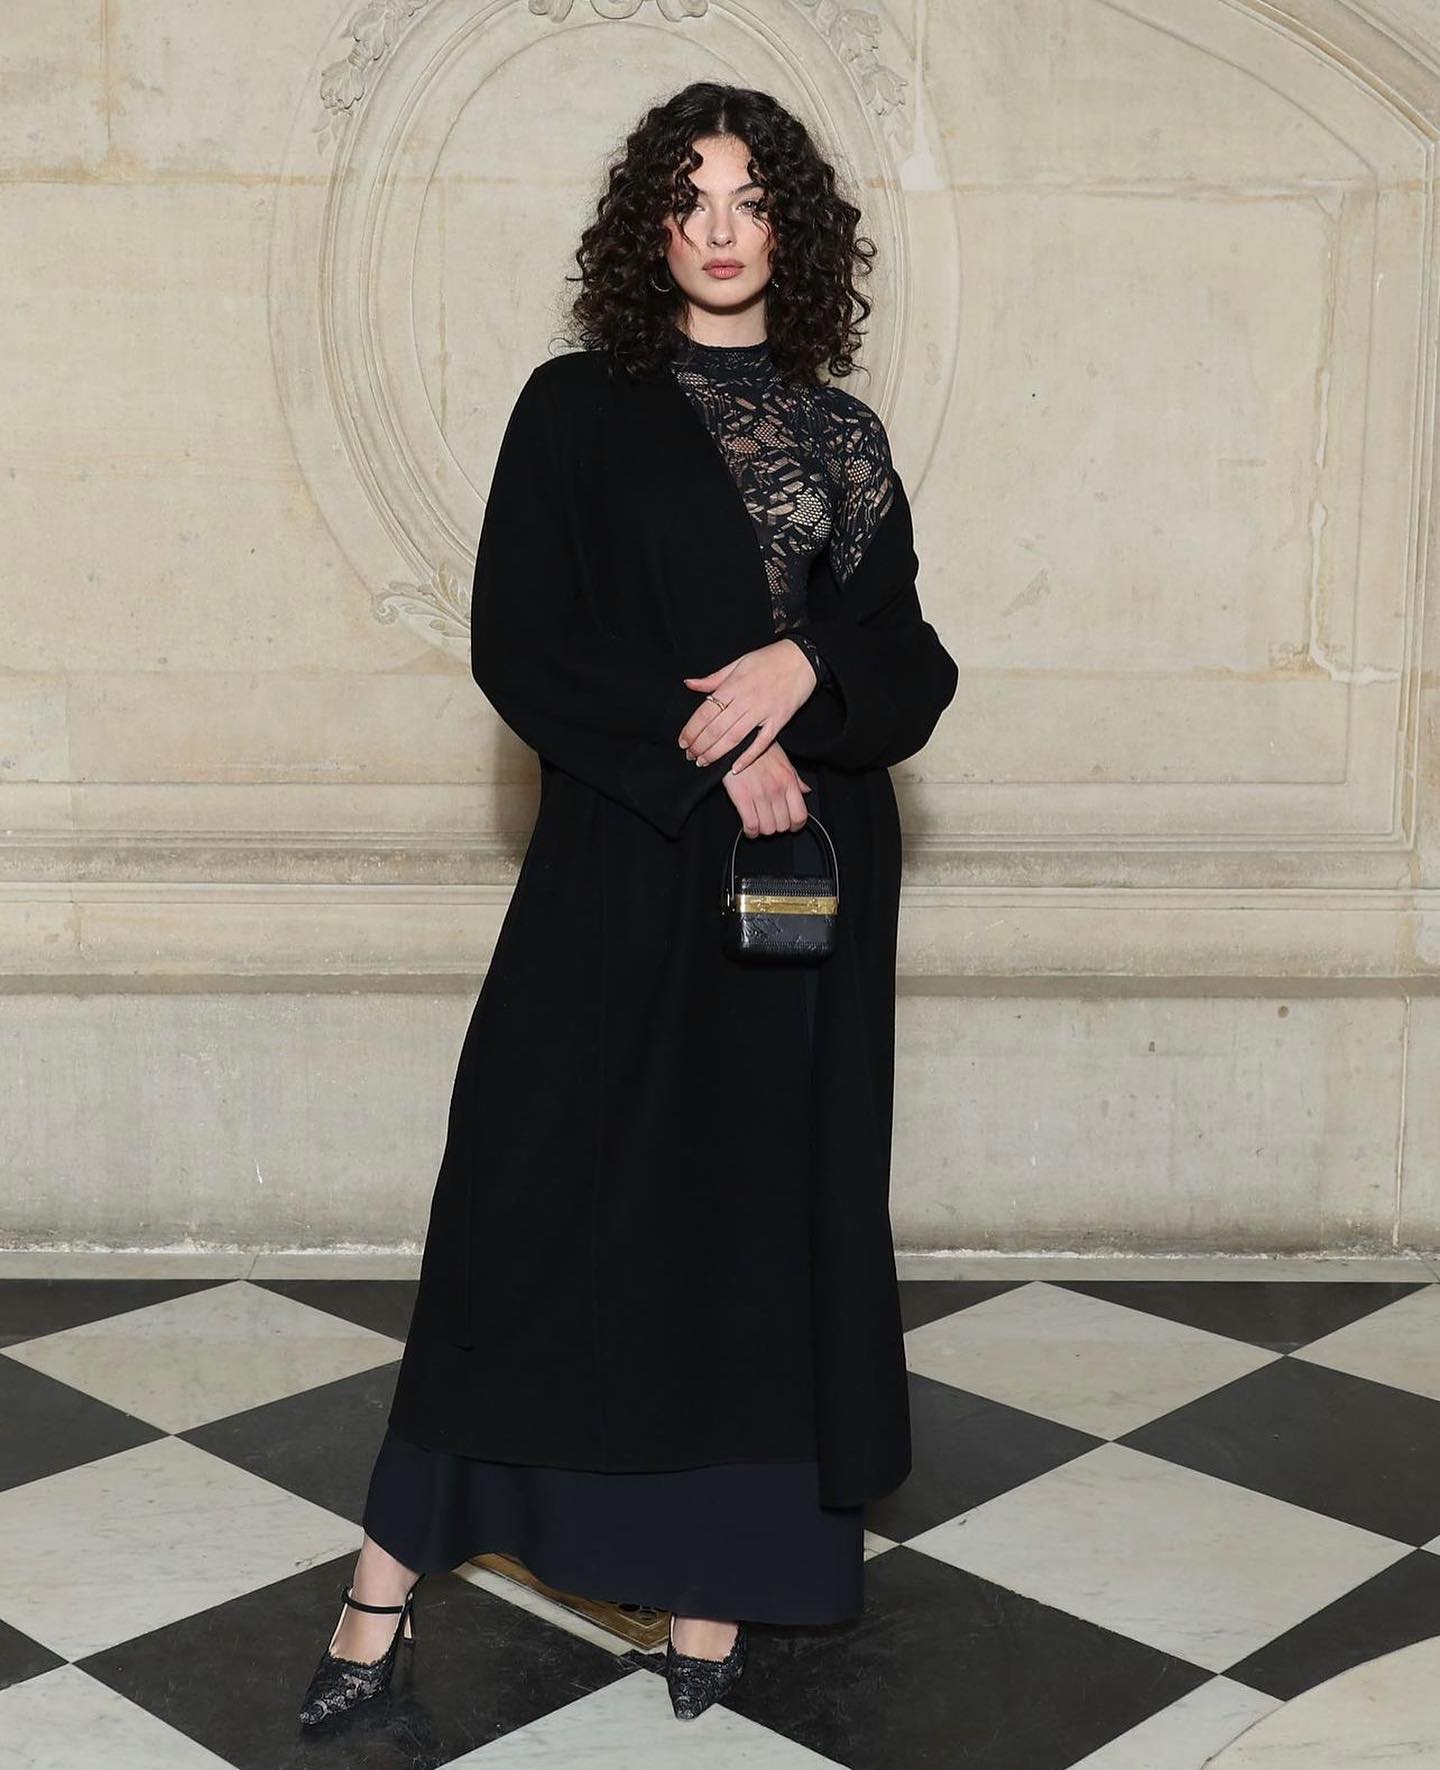 Η Deva Cassel είναι η νέα πρέσβειρα μόδας και ομορφιάς του Dior